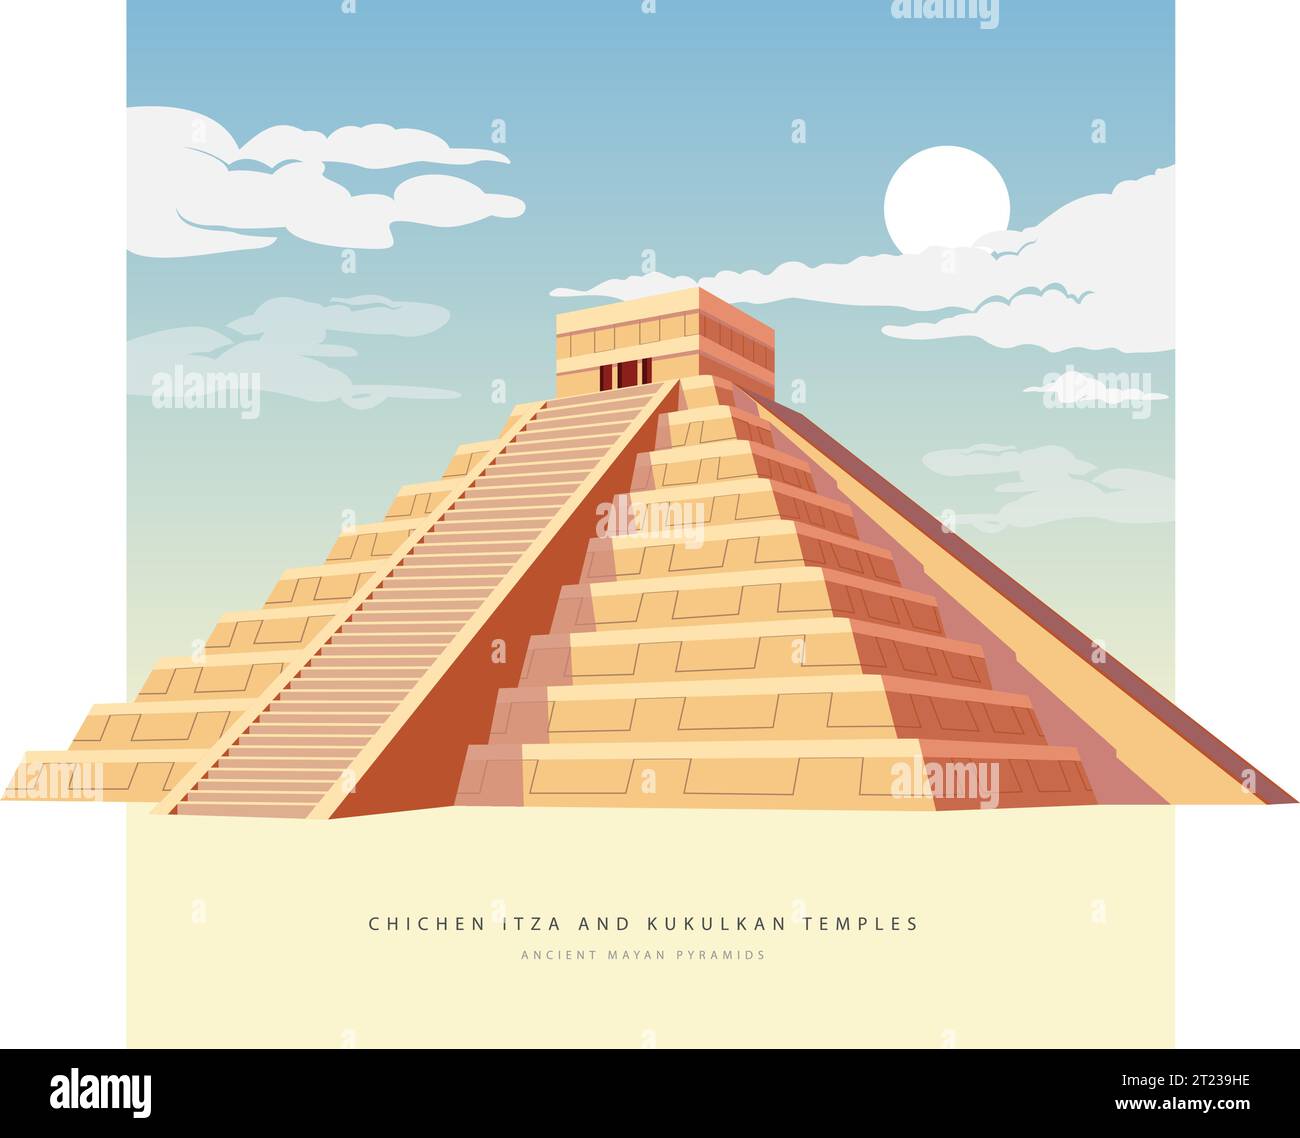 El Castillo - Chichen Itza - A Pre Coloumbian Mayan City Temple - Stock Illustration as EPS 10 File Stock Vector